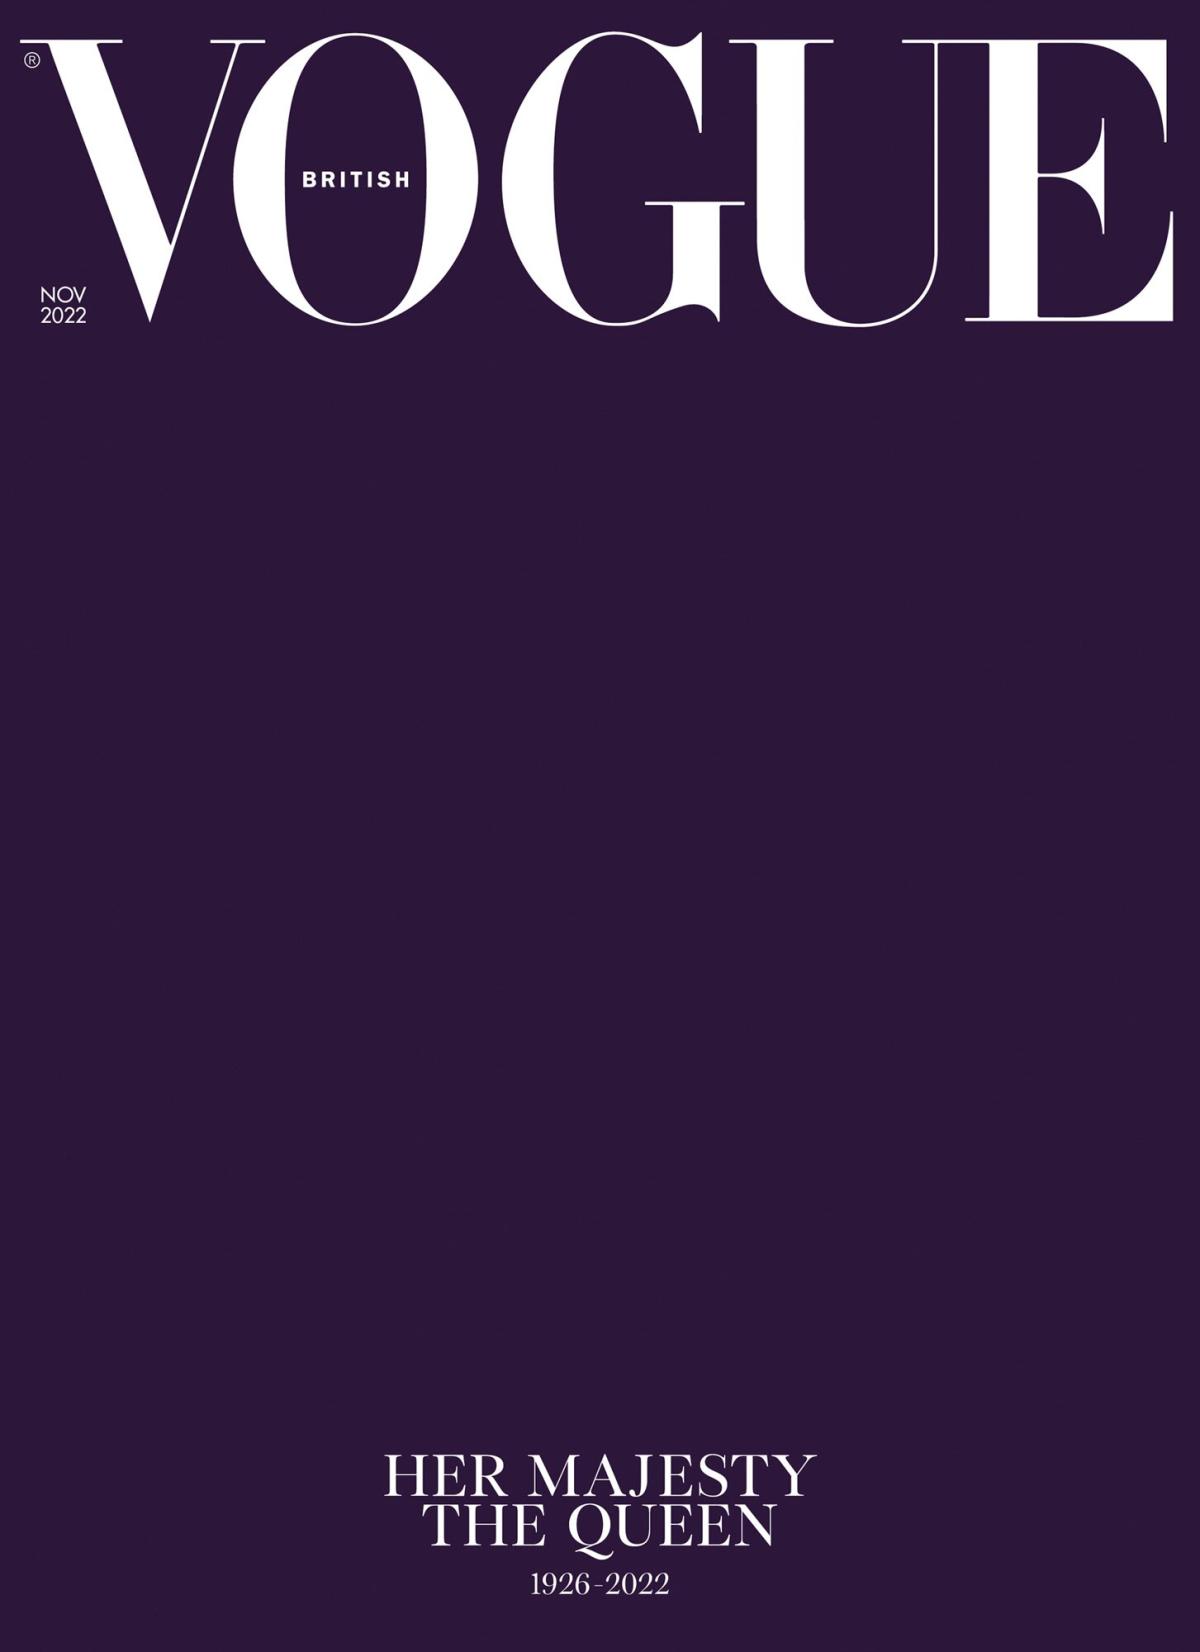 Vogue magazine  Vogue magazine, Magazine cover template, Vogue magazine  covers